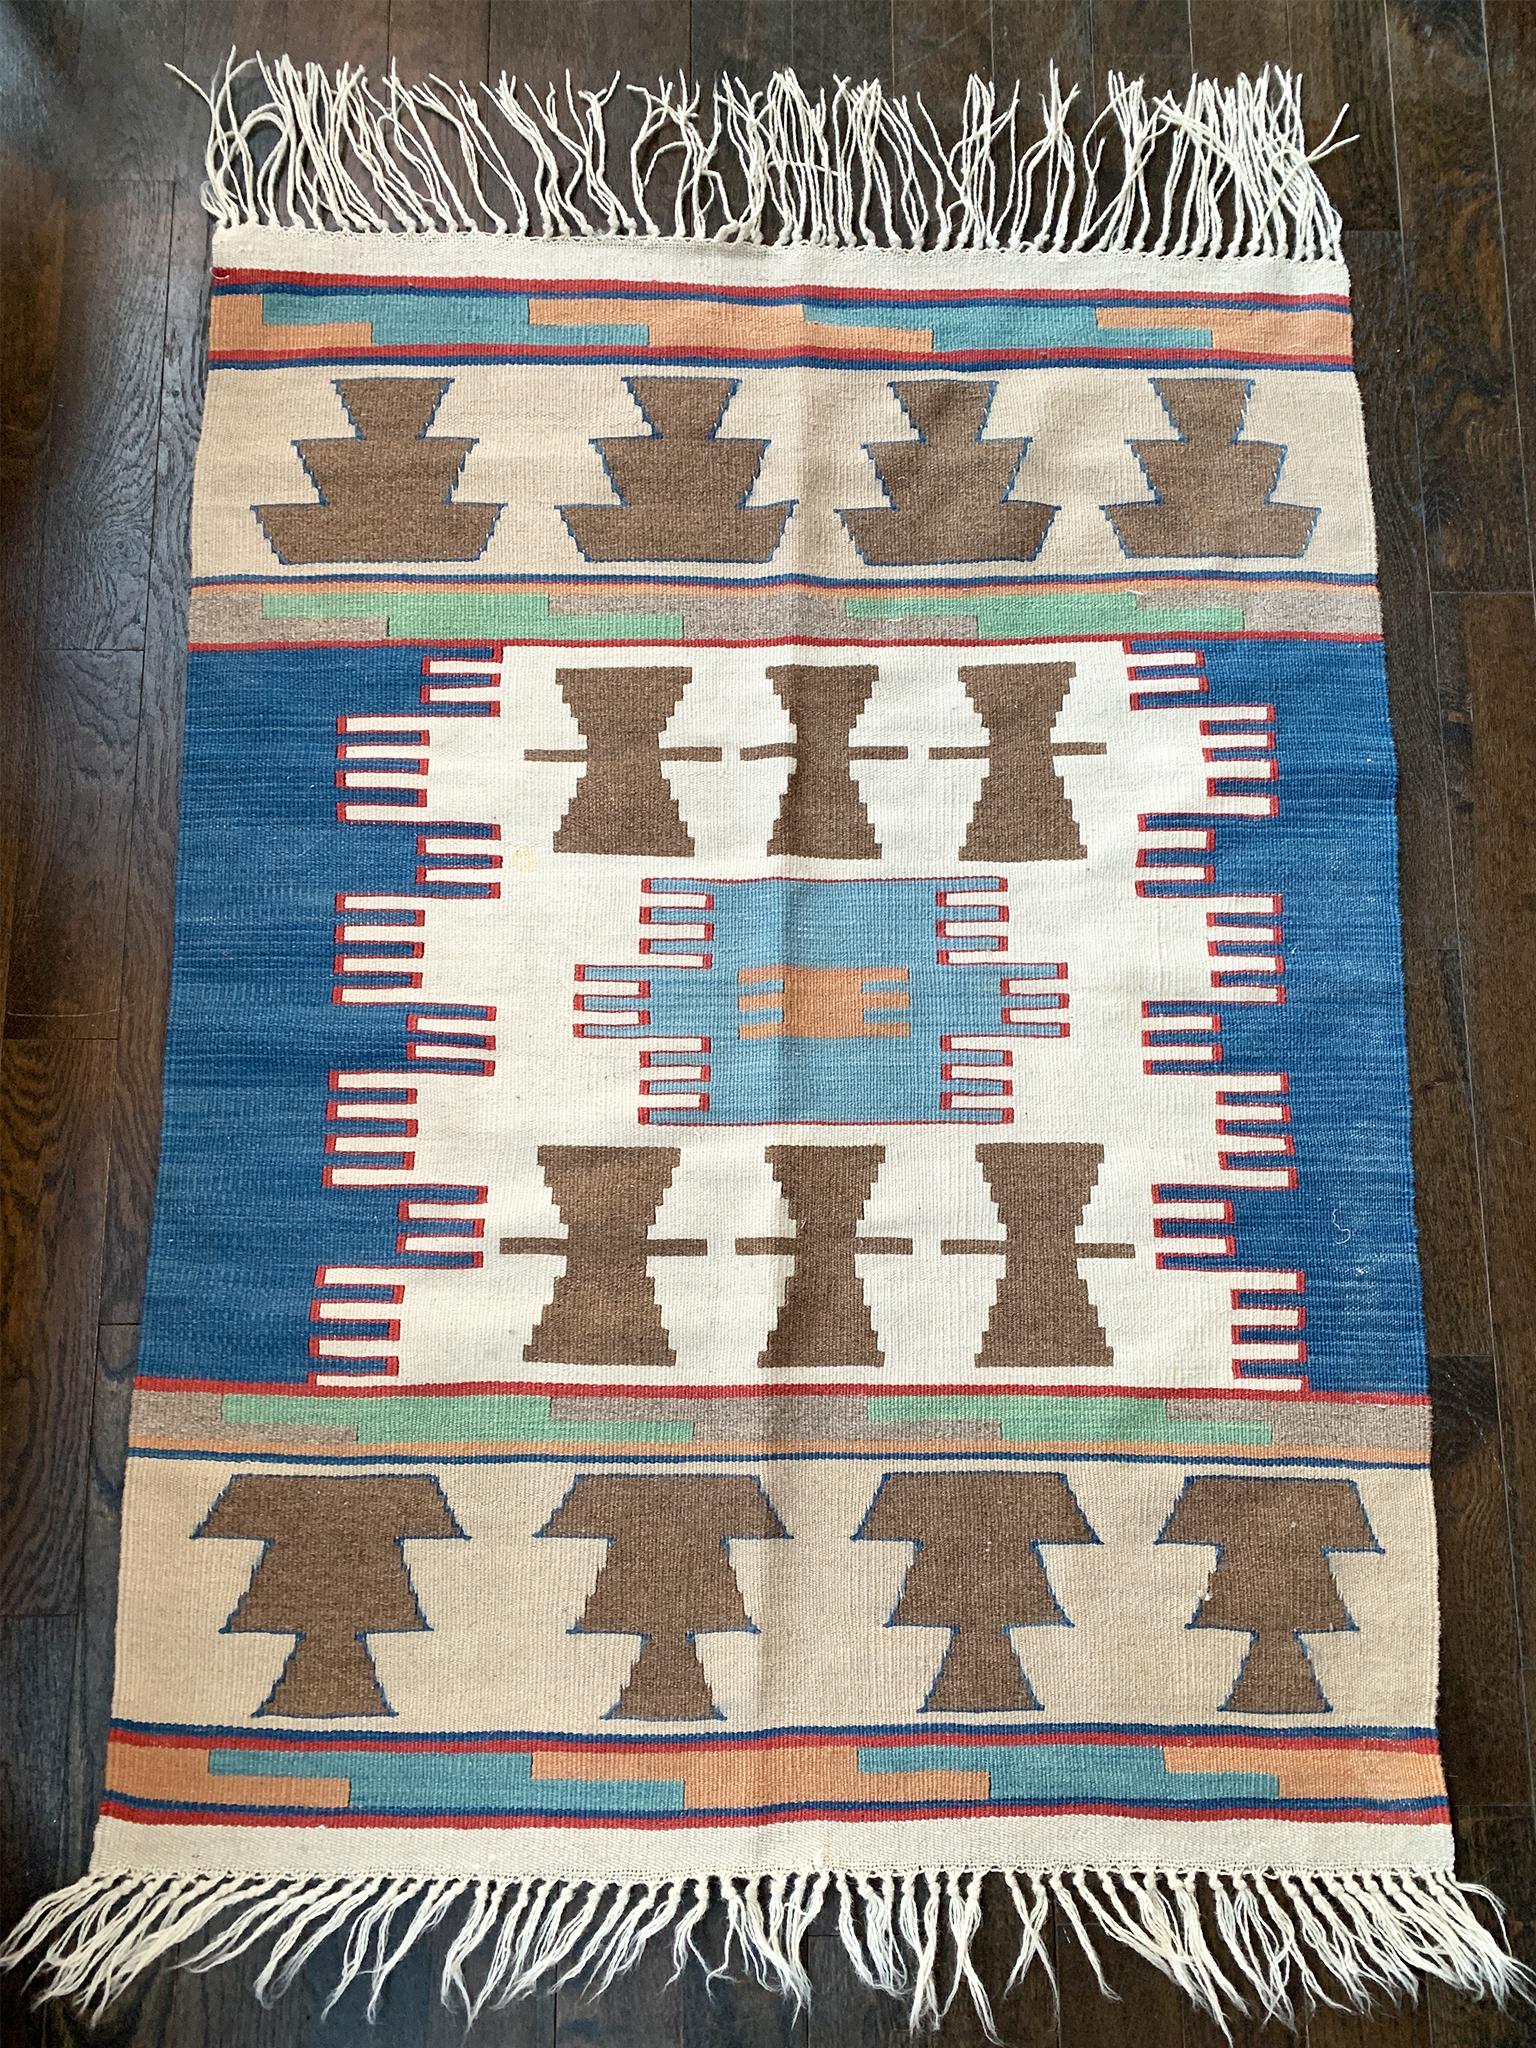 Navajo-Teppich mit einer erdigen Farbpalette aus hellen und dunklen Blautönen, Rot, Hellgrün, Braun, Hellbraun, Pfirsich und Elfenbein. 

Abmessungen:
3' x 4' (36 in. x 48 in.)

Anmerkungen zum Zustand:
In gutem Zustand. Leichte